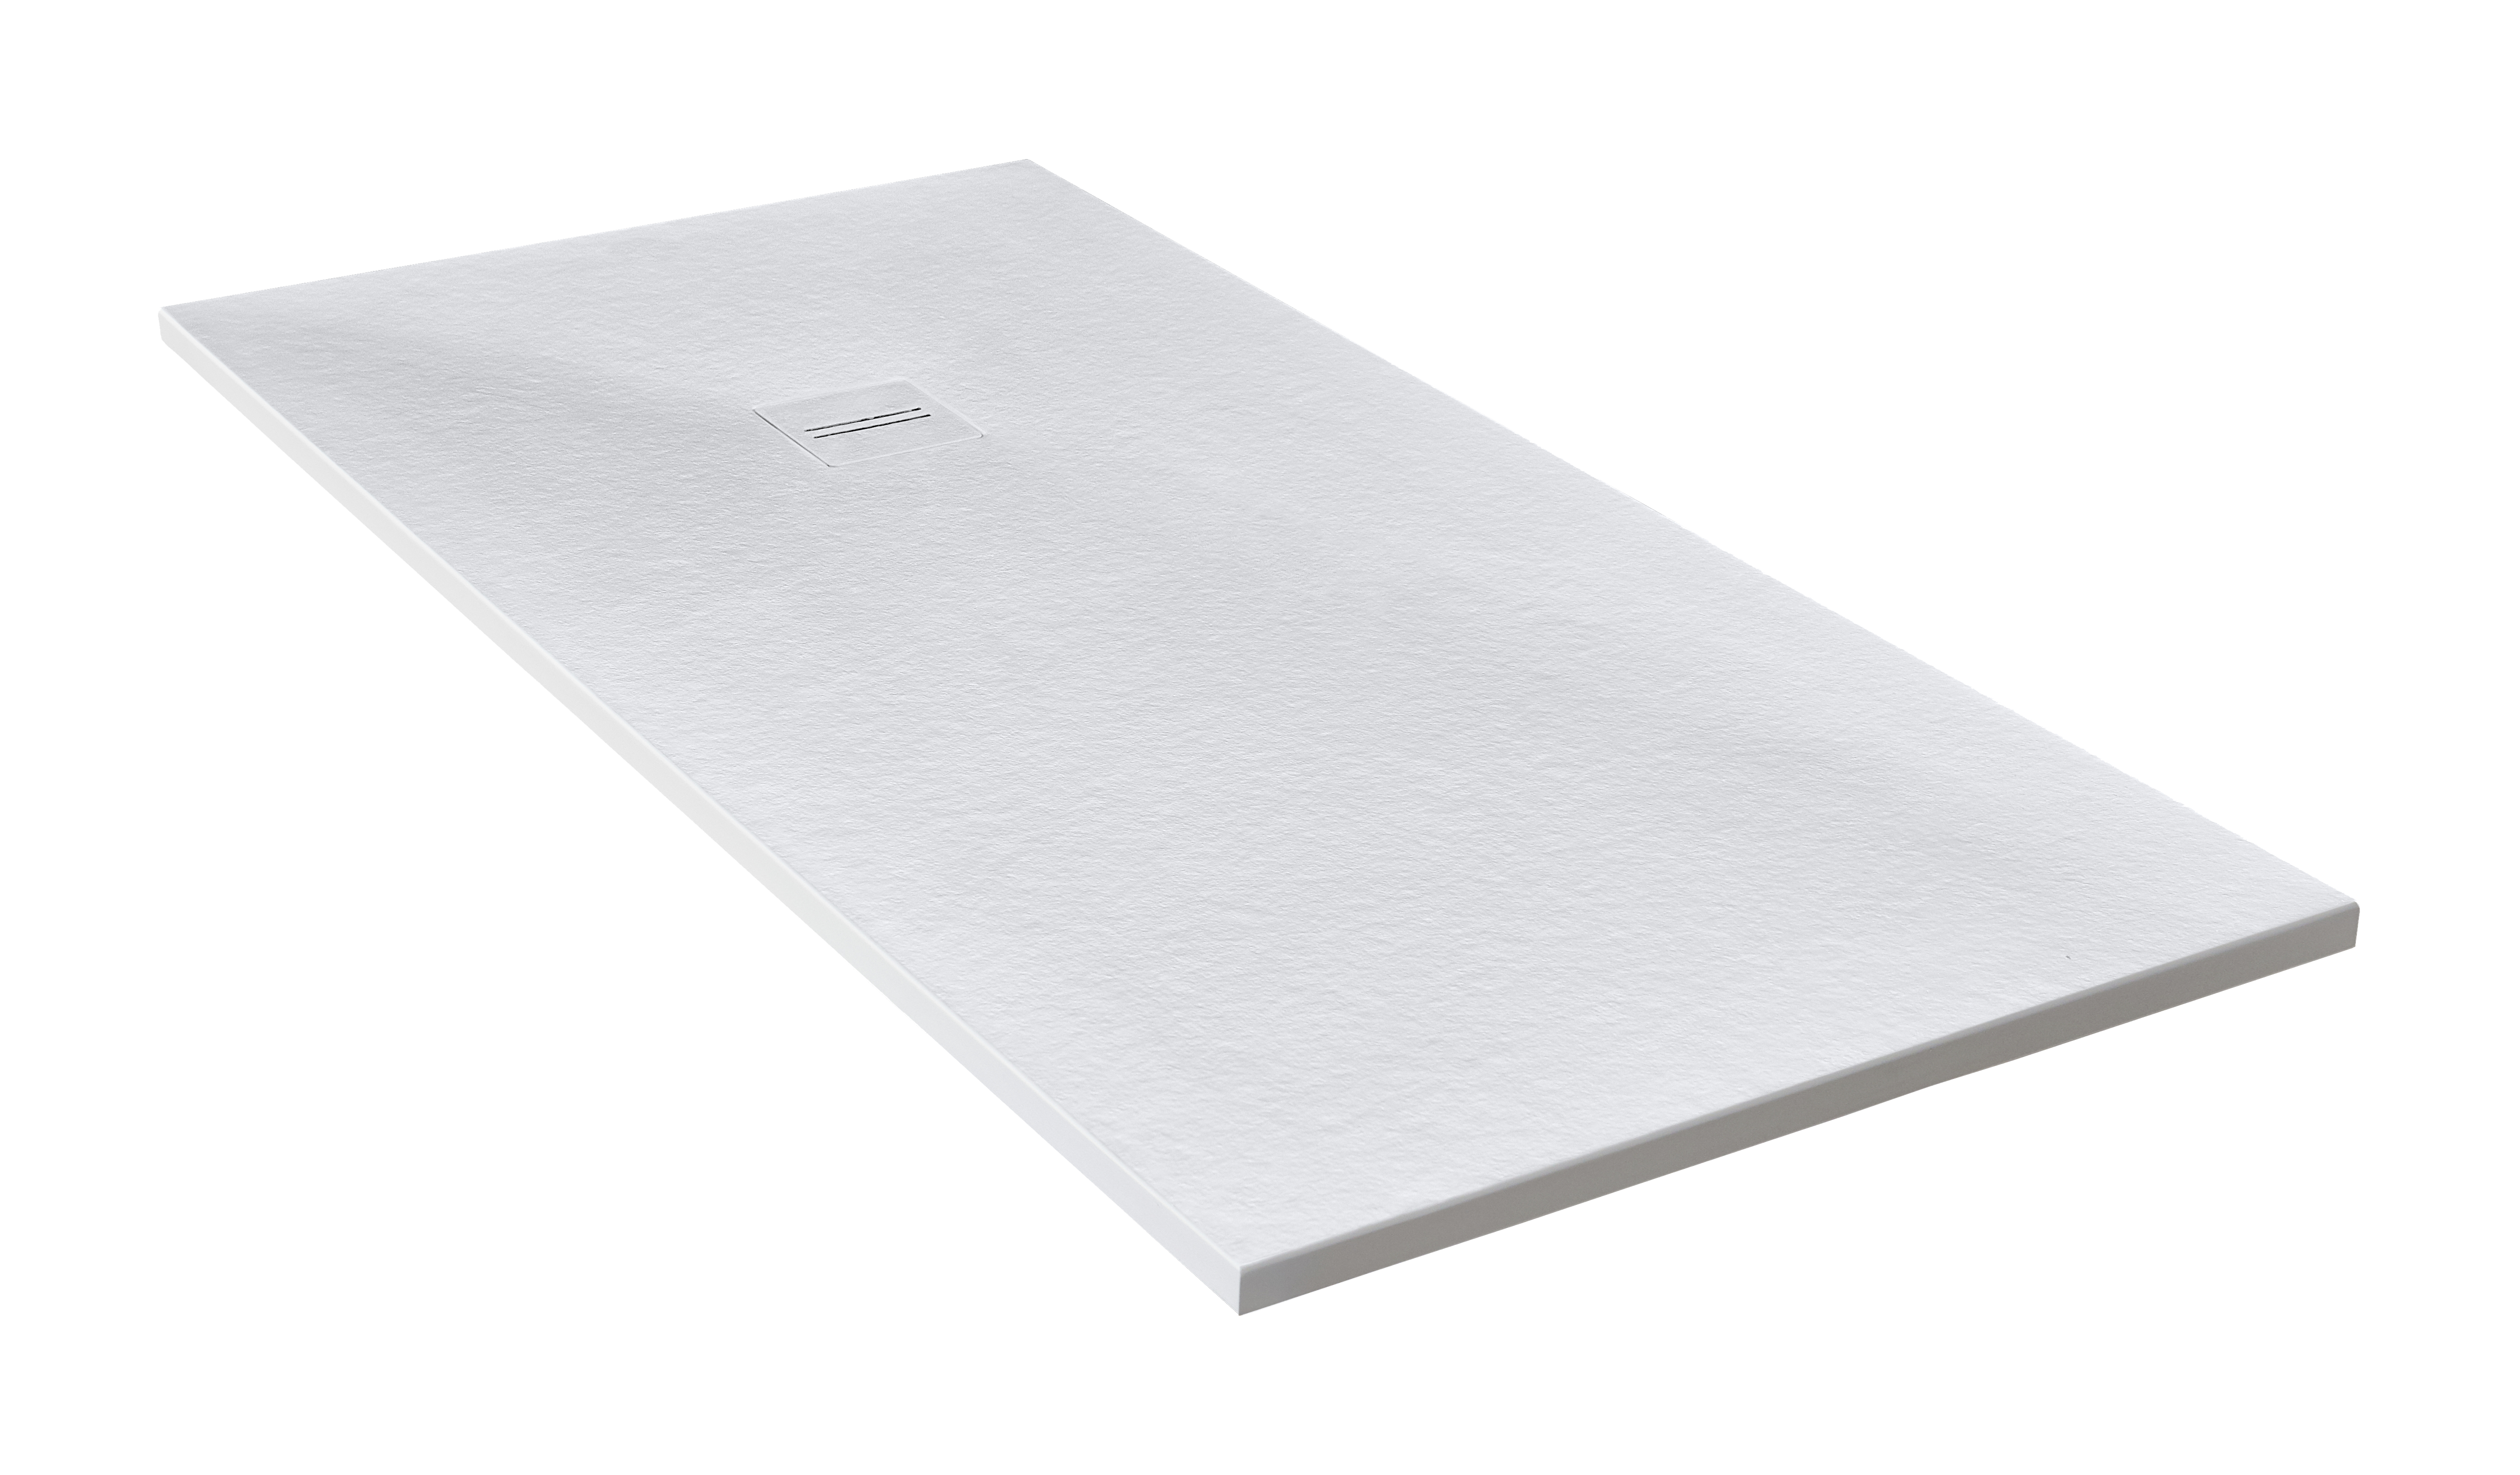 Plato de ducha cosmos 160x75 cm blanco